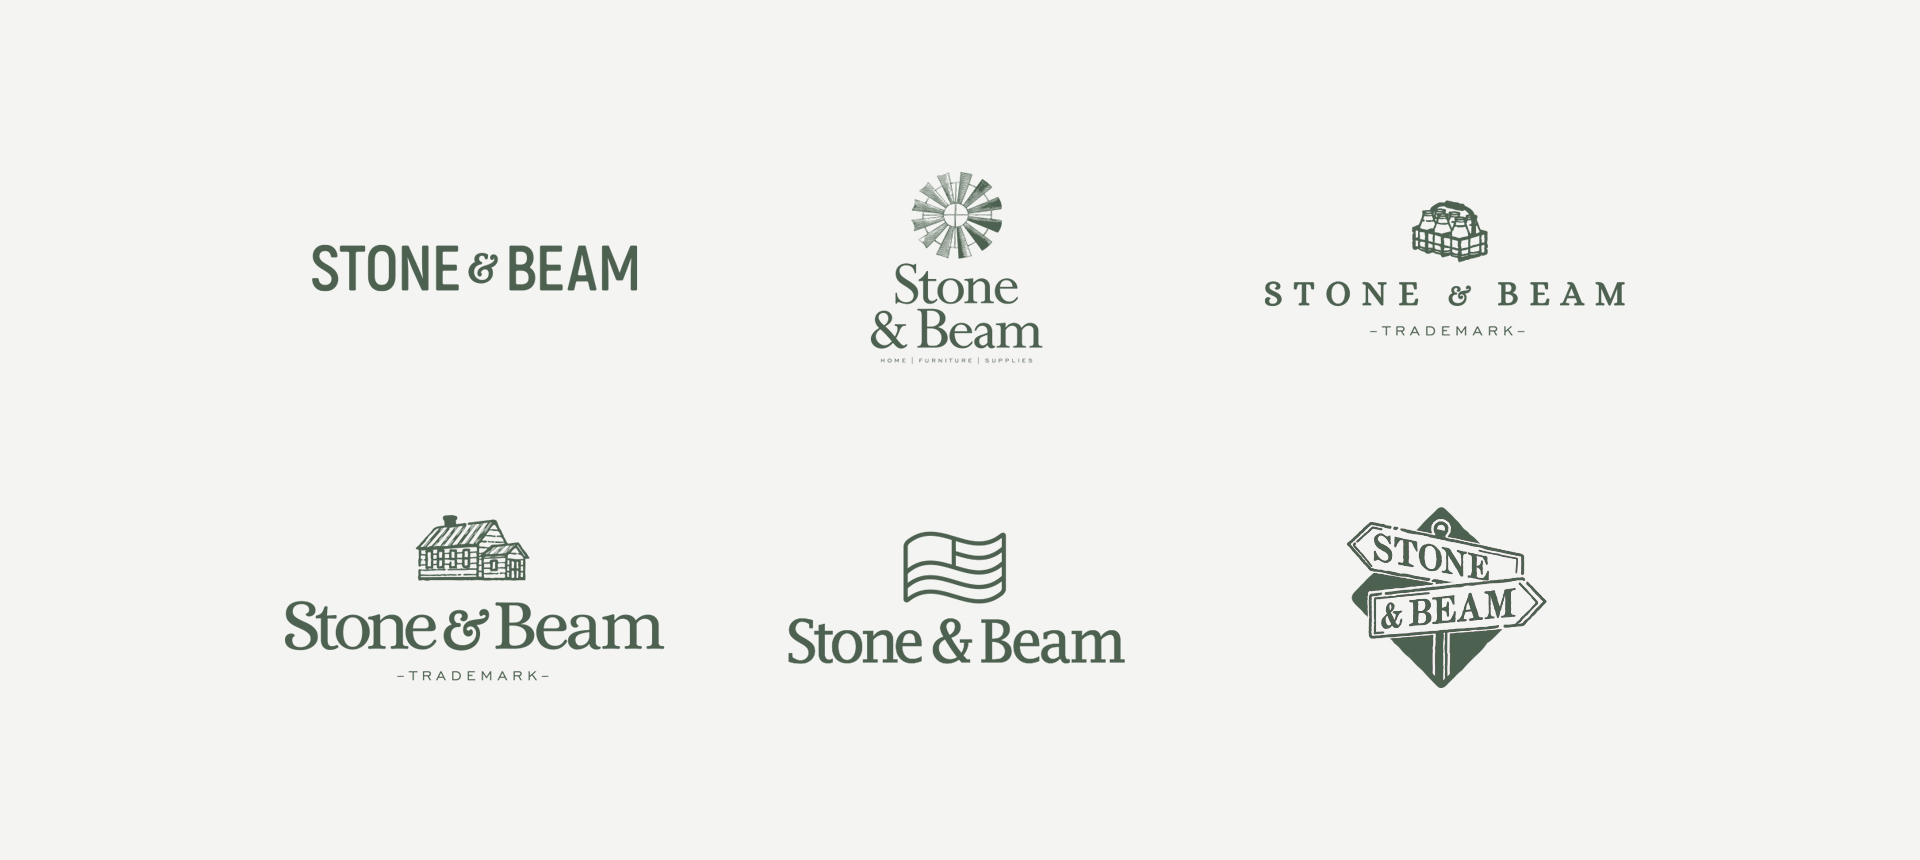 stoneandbeam_logos_2